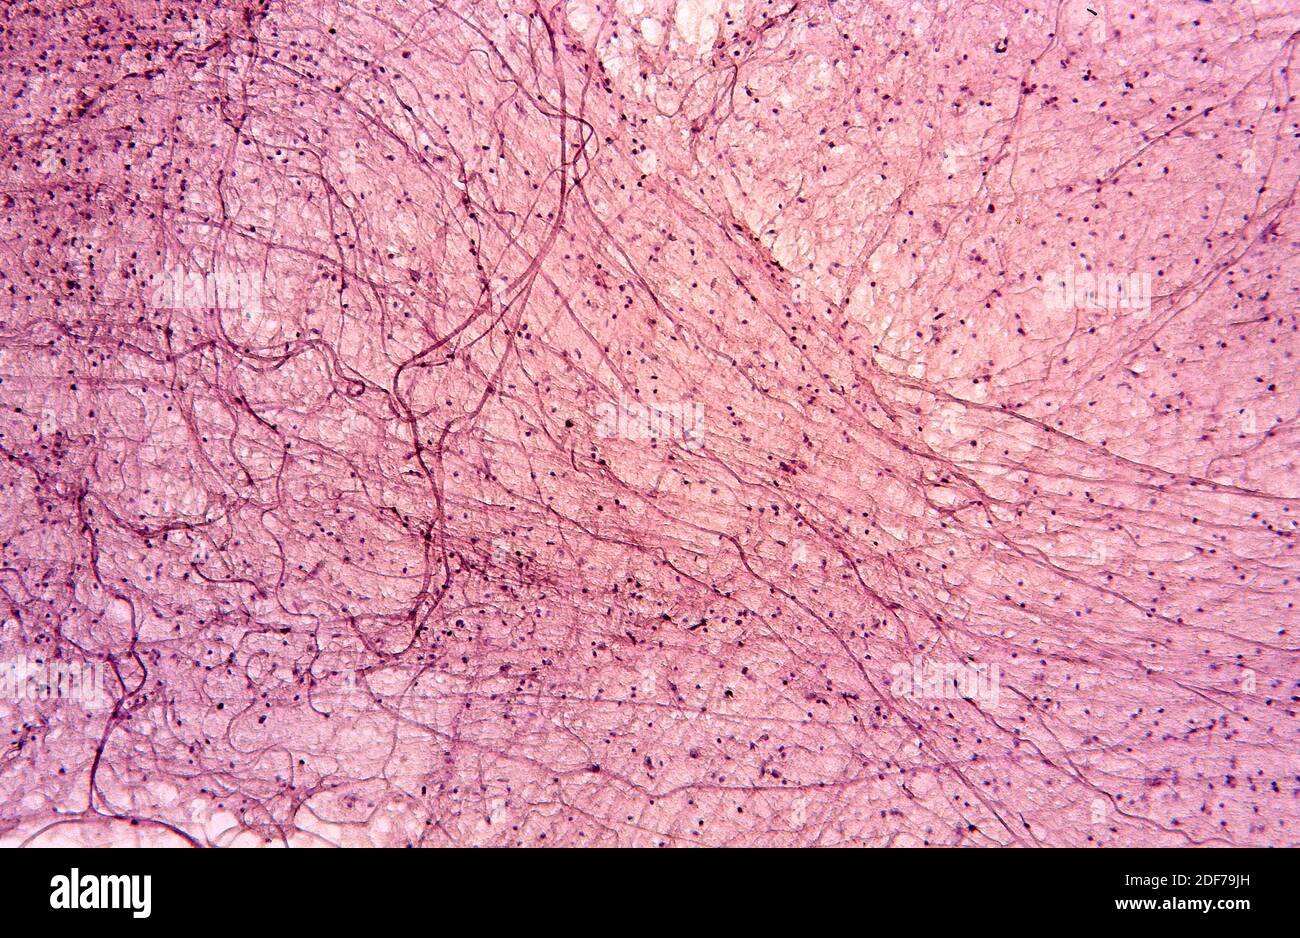 Axones de neuronas motoras. Fotomicrografía. Foto de stock